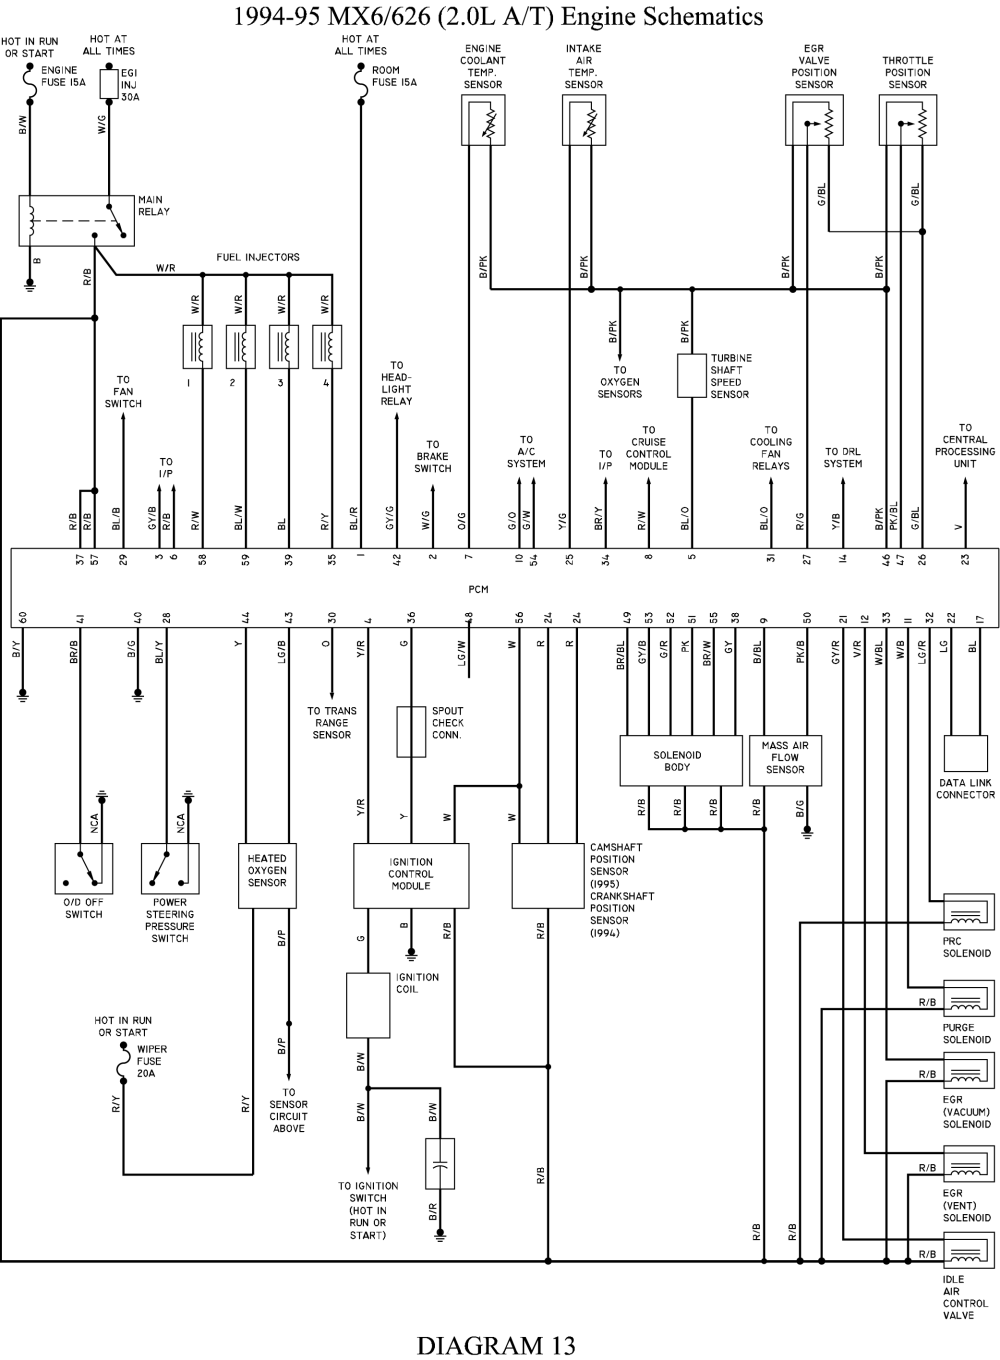 1996 mazda mx6 / ford probe wiring diagram